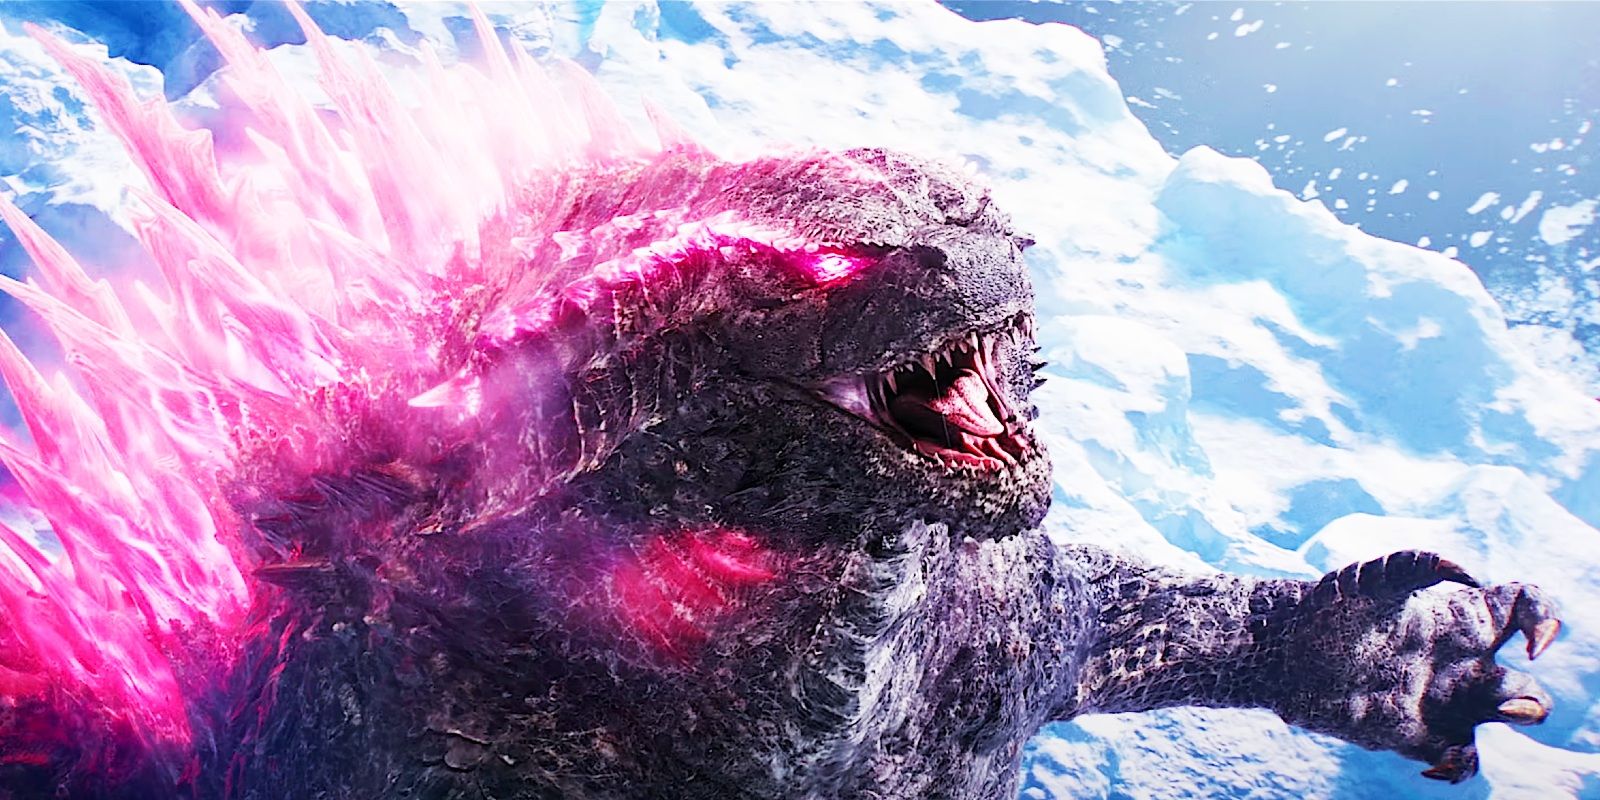 Primeras reacciones de Godzilla X Kong: nuevo imperio, mismo Monsterverse